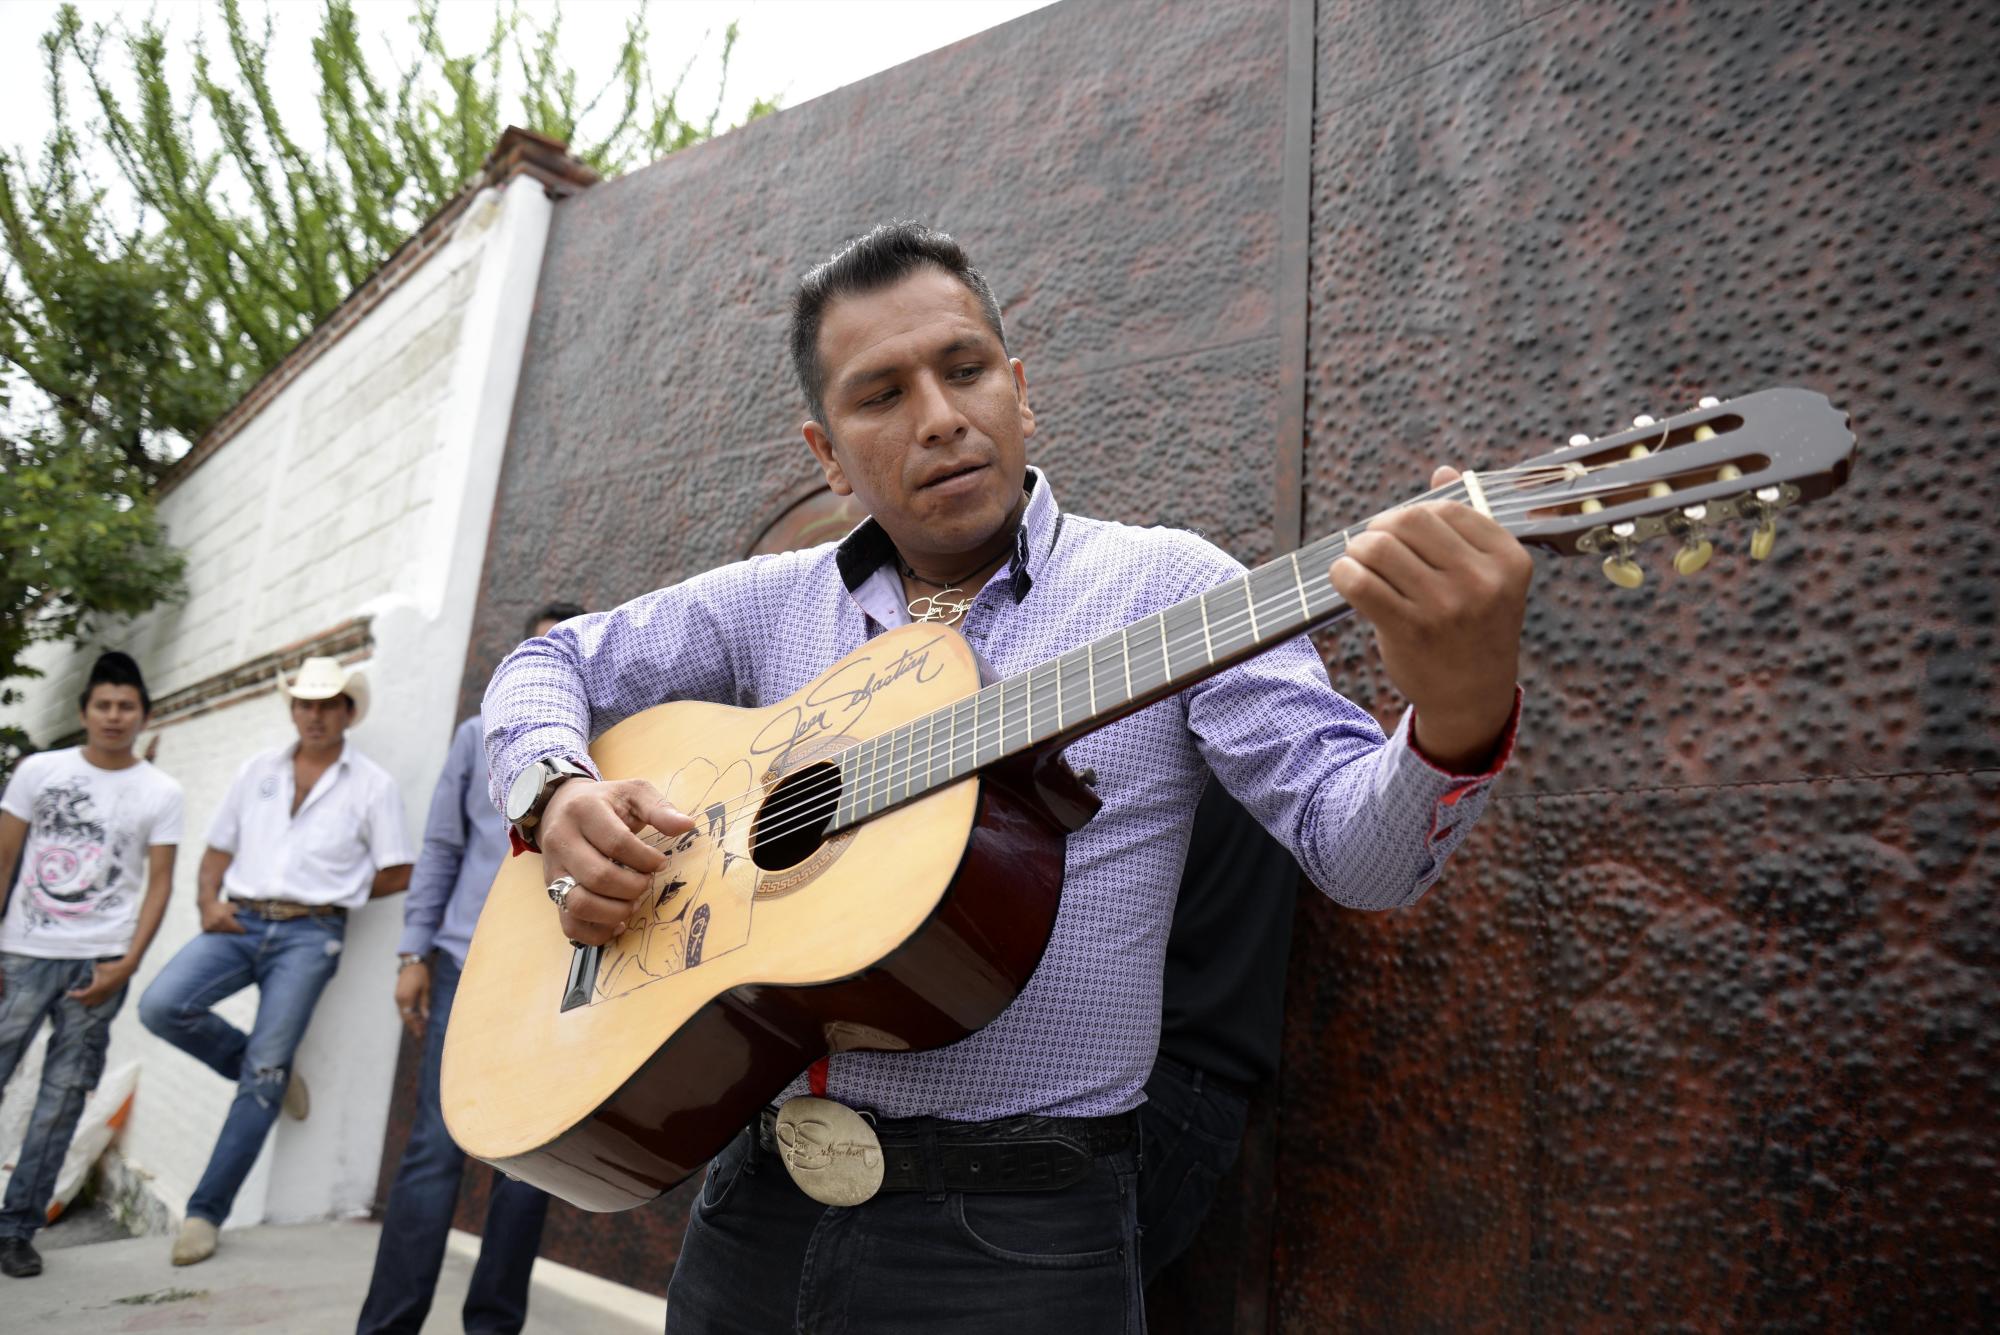 Domingo David, un admirador de Joan Sebastian, toca la guitarra afuera de la casa del cantante mexicano en Teacalco, México, el martes 14 de julio del 2015. Joan Sebastian murió el lunes tras una larga lucha con el cáncer. Tenía 64 años.